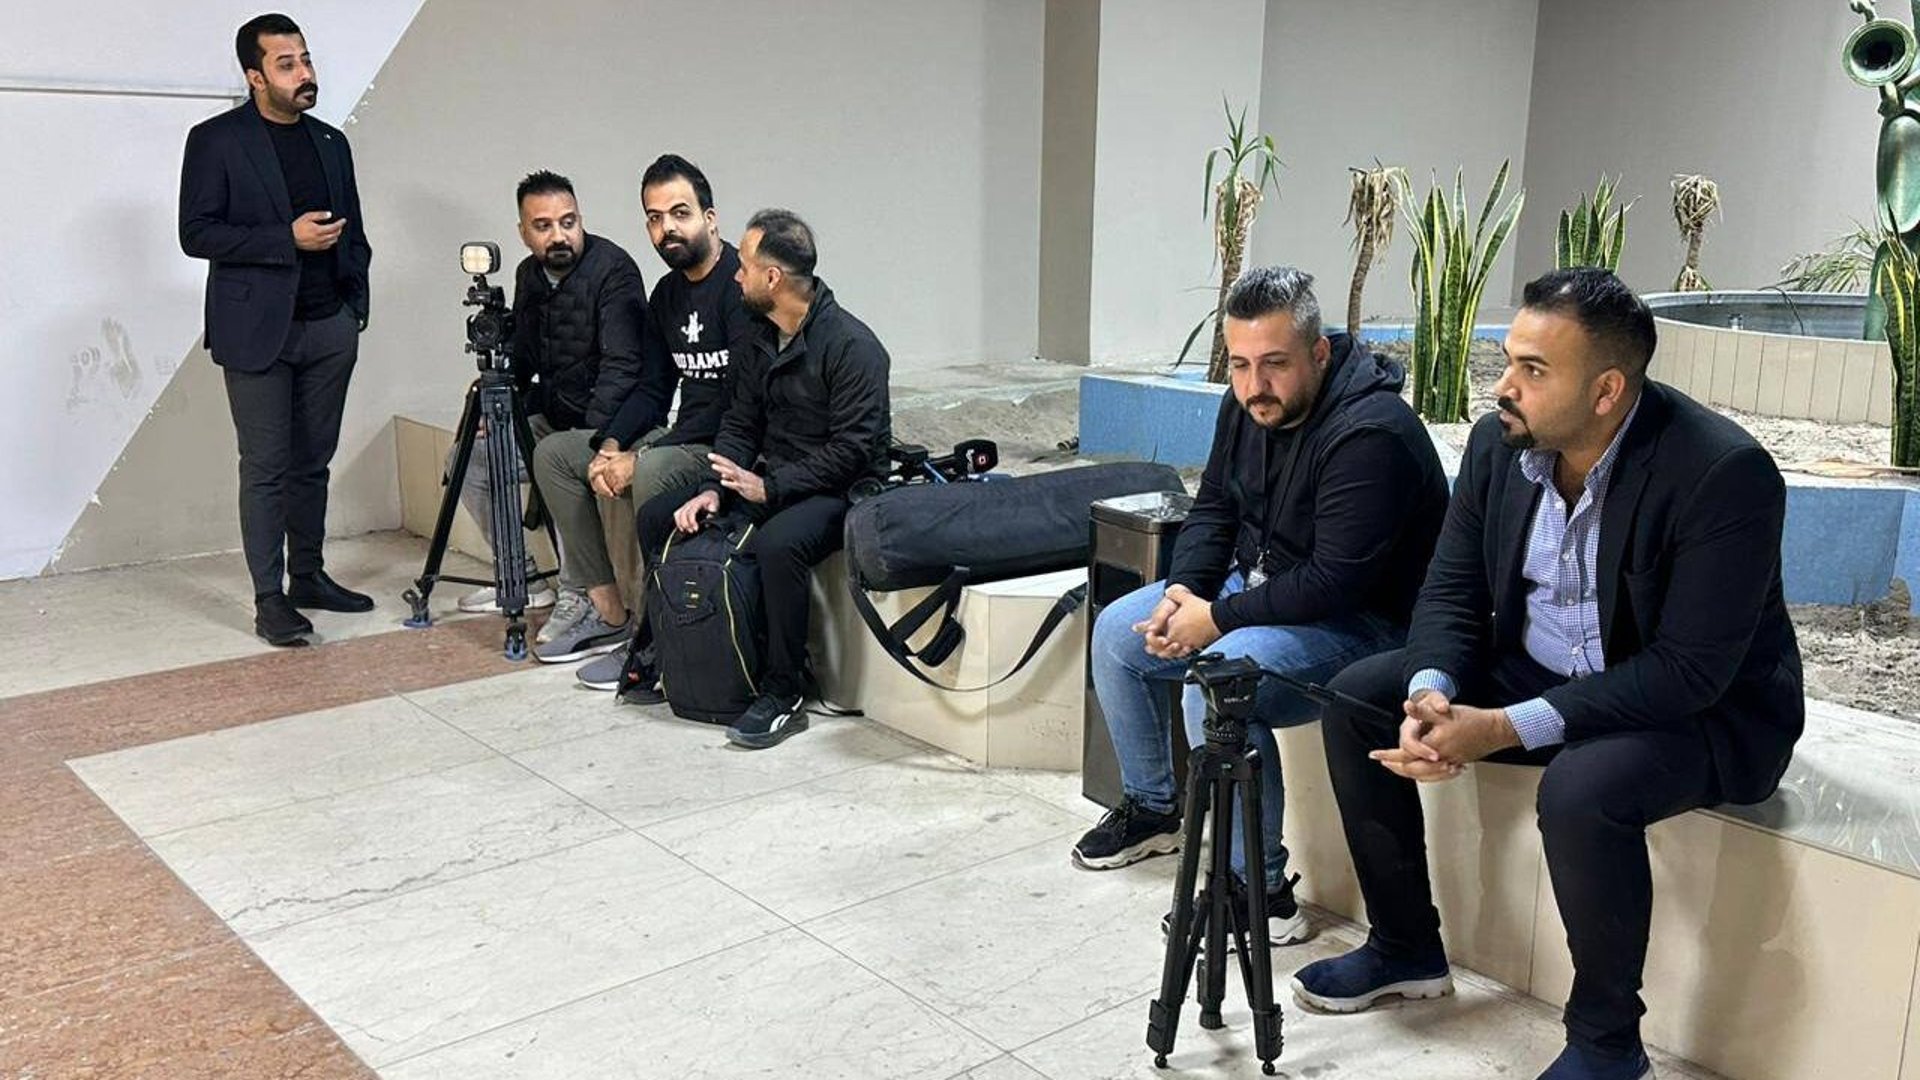 مجلس محافظة بغداد يمنع دخول الصحفيين الى جلسته الأولى (صور)